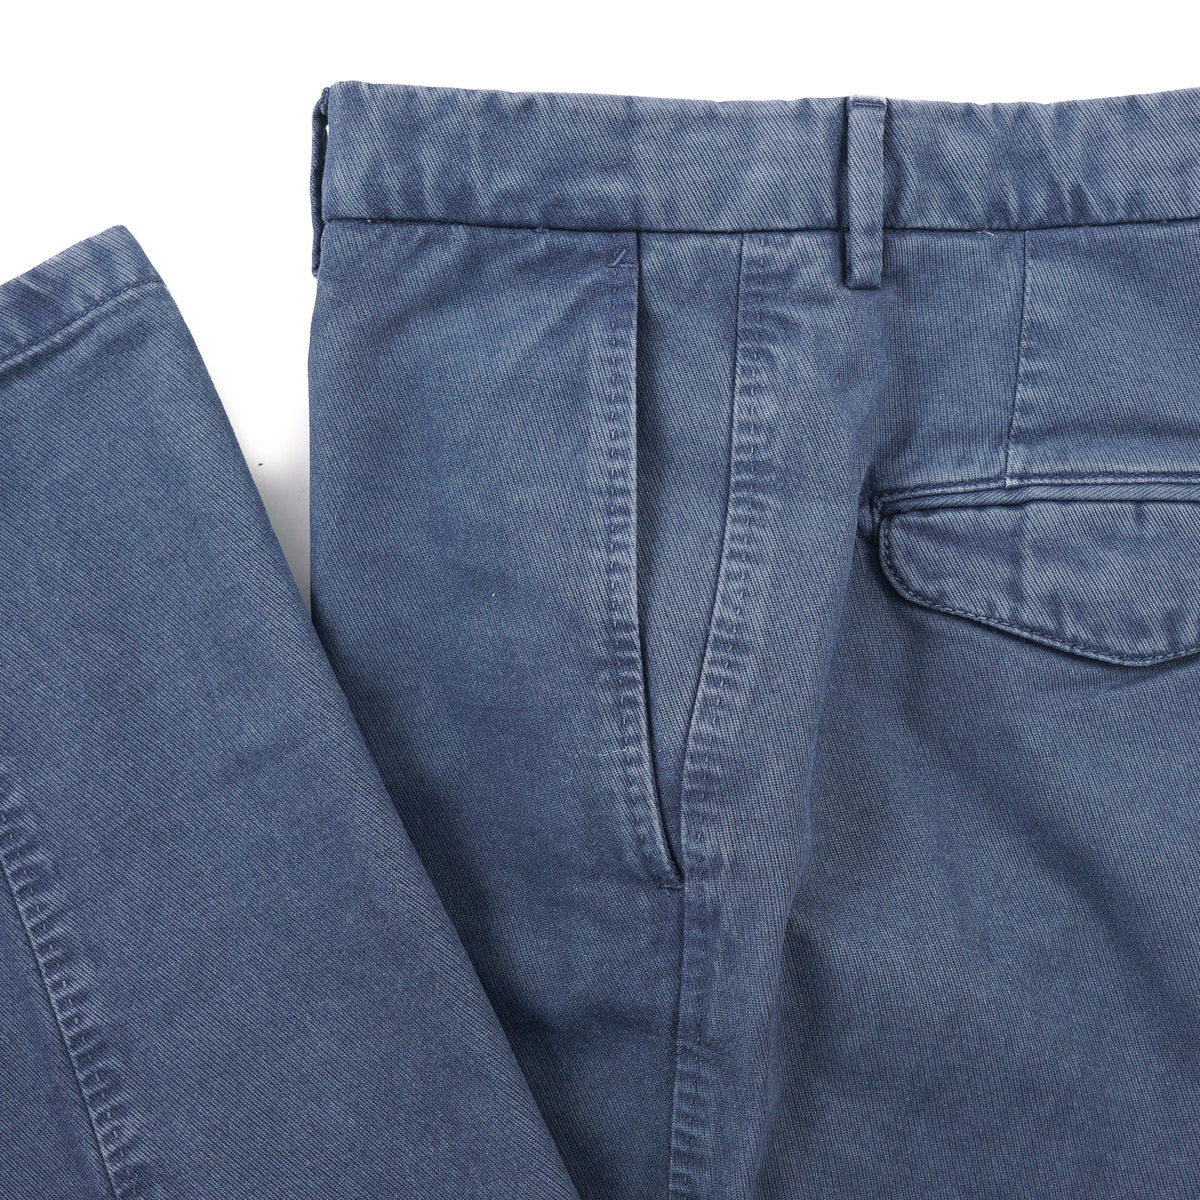 Marco Pescarolo Slim-Fit Cotton-Wool Pants - Top Shelf Apparel